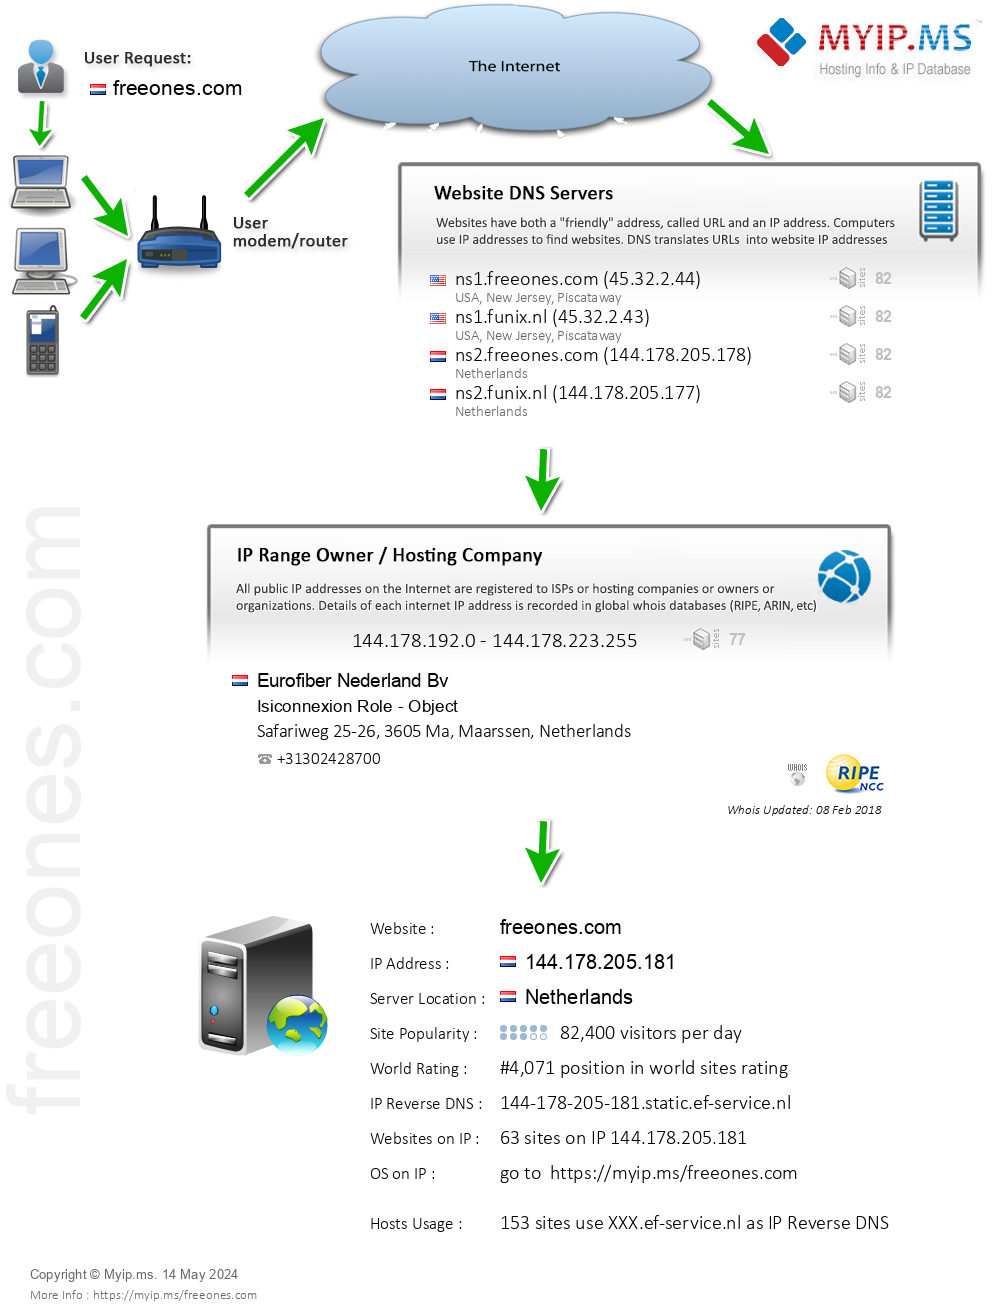 Freeones.com - Website Hosting Visual IP Diagram